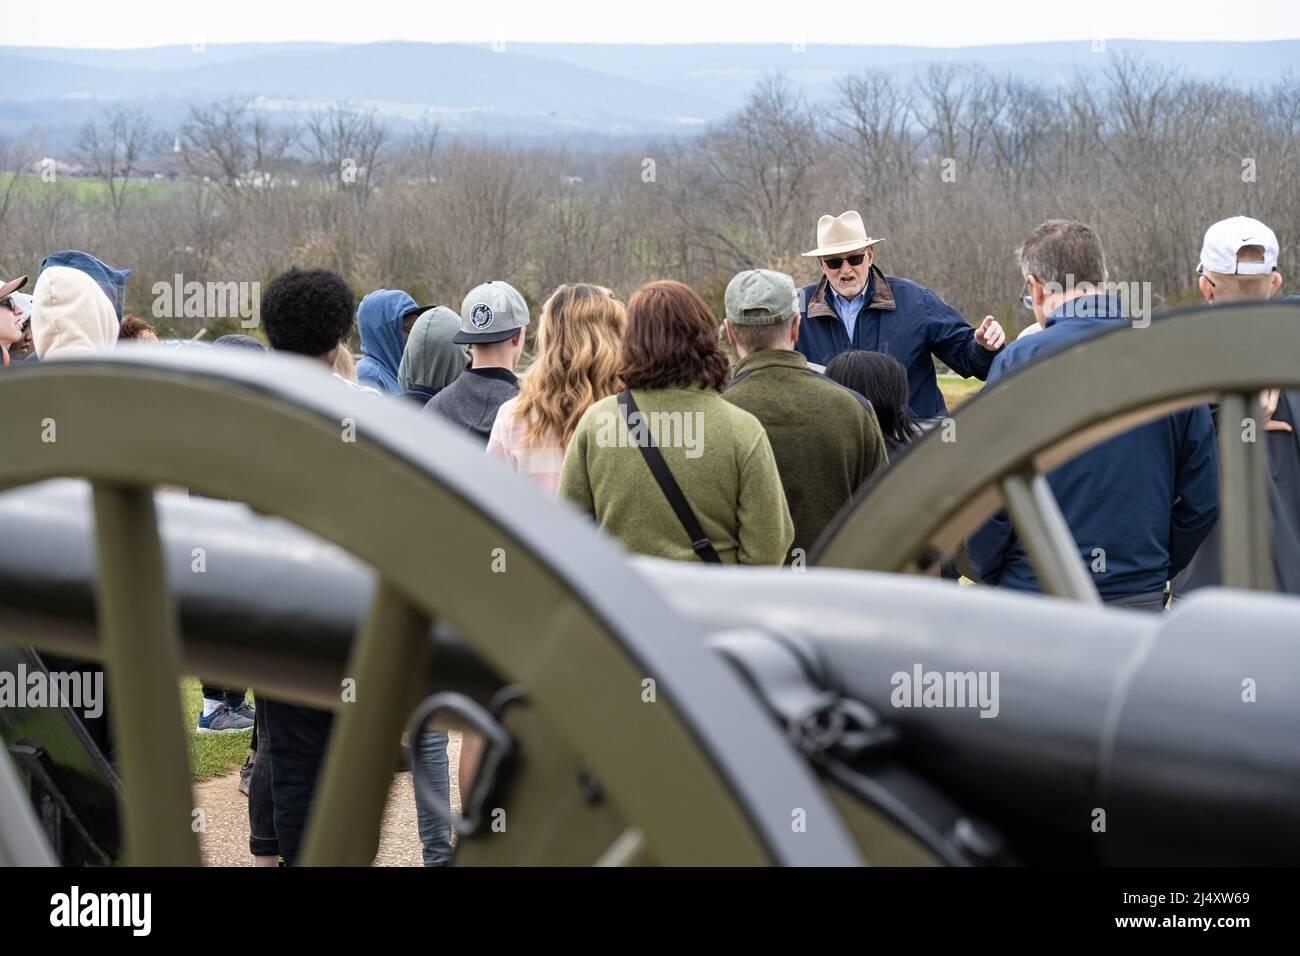 Guide touristique expliquant l'importance historique d'un site de bataille près d'Oak Ridge et du Mémorial de la paix Eternal Light à Gettysburg en Pennsylvanie. Banque D'Images